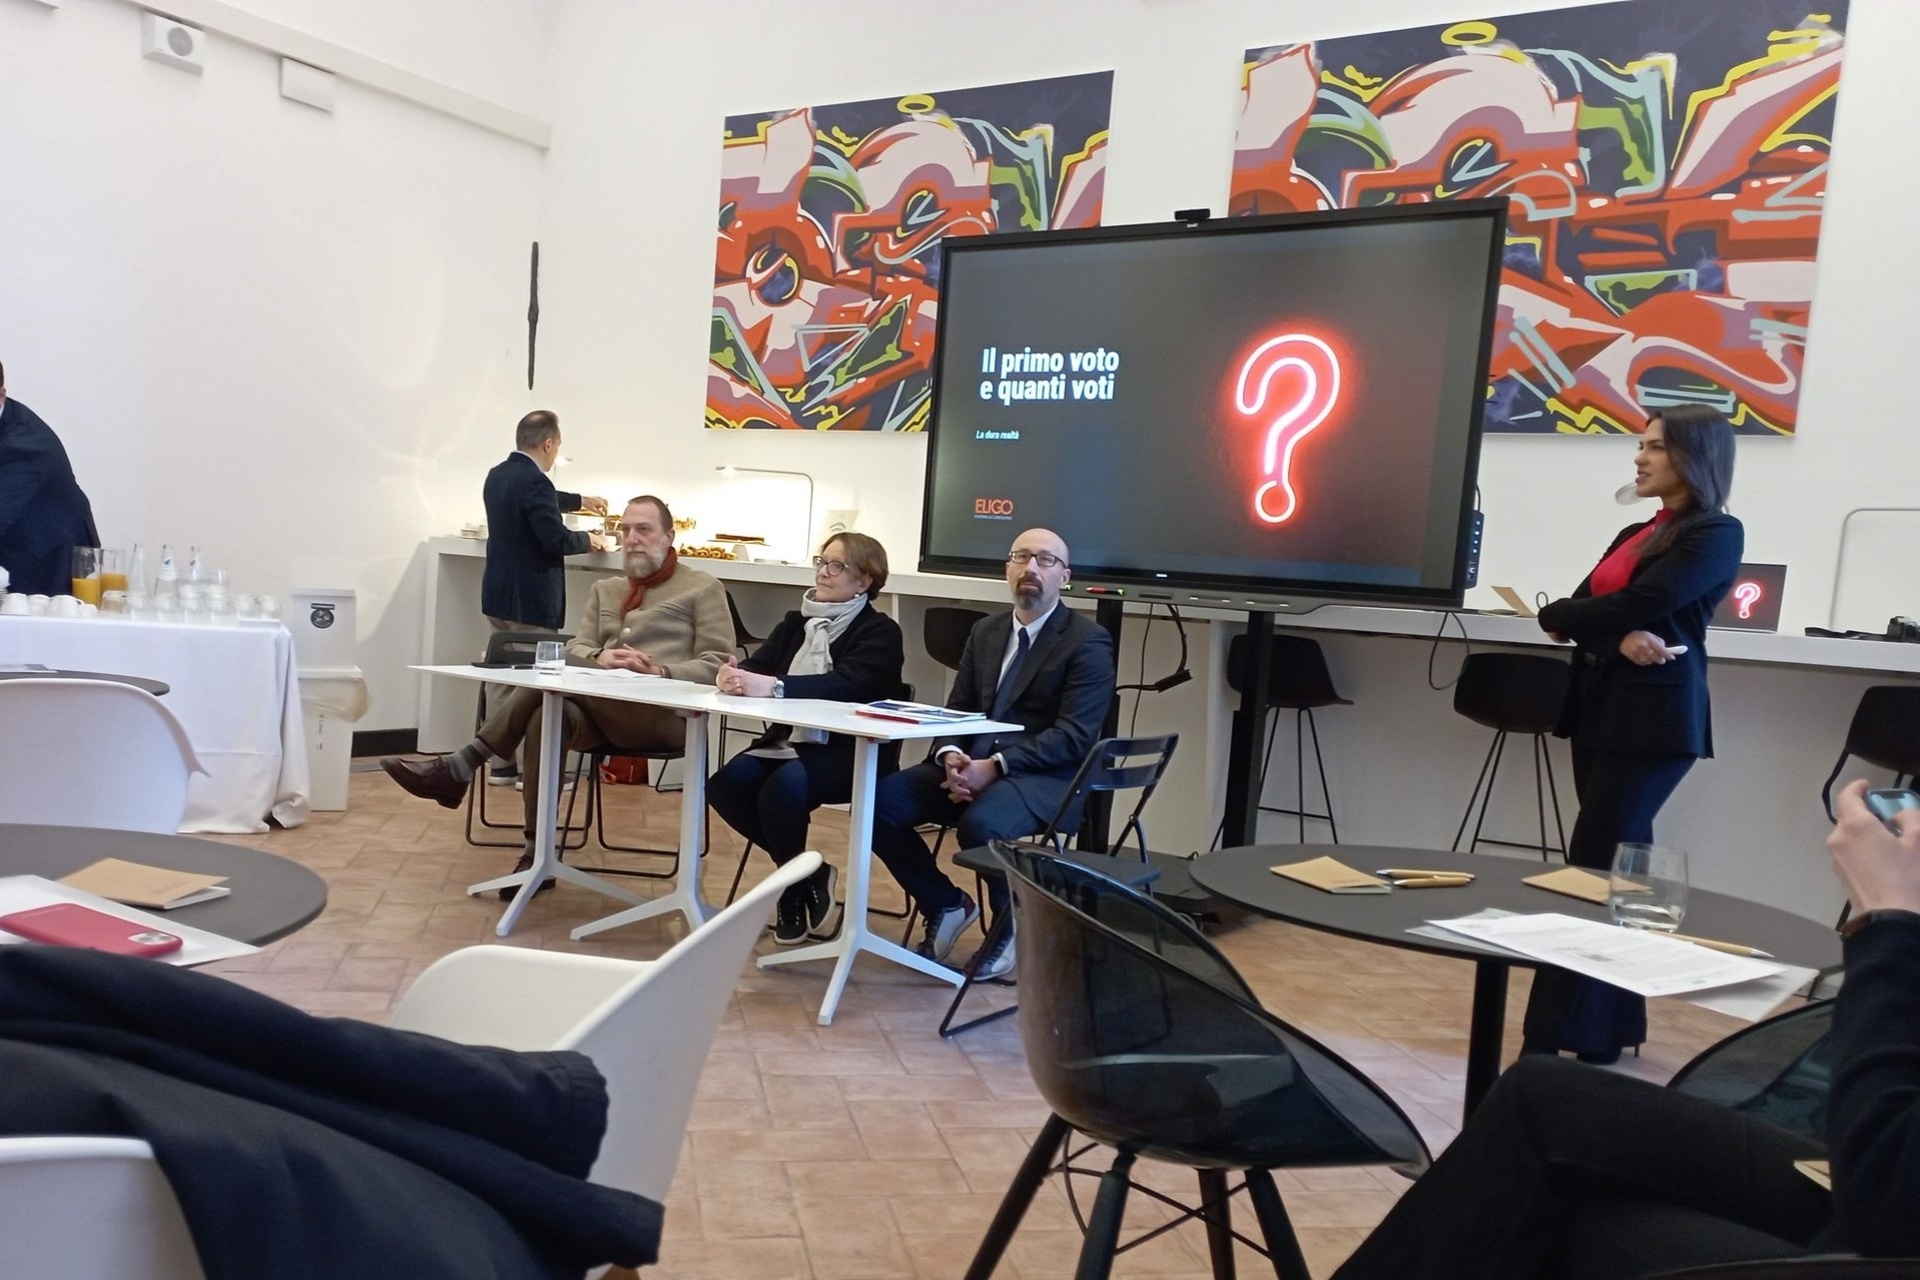 Eligo Next: презентација на новата електронска и онлајн платформа за гласање Eligo Next во Милано од Ирене Пуљати, извршен директор на компанијата